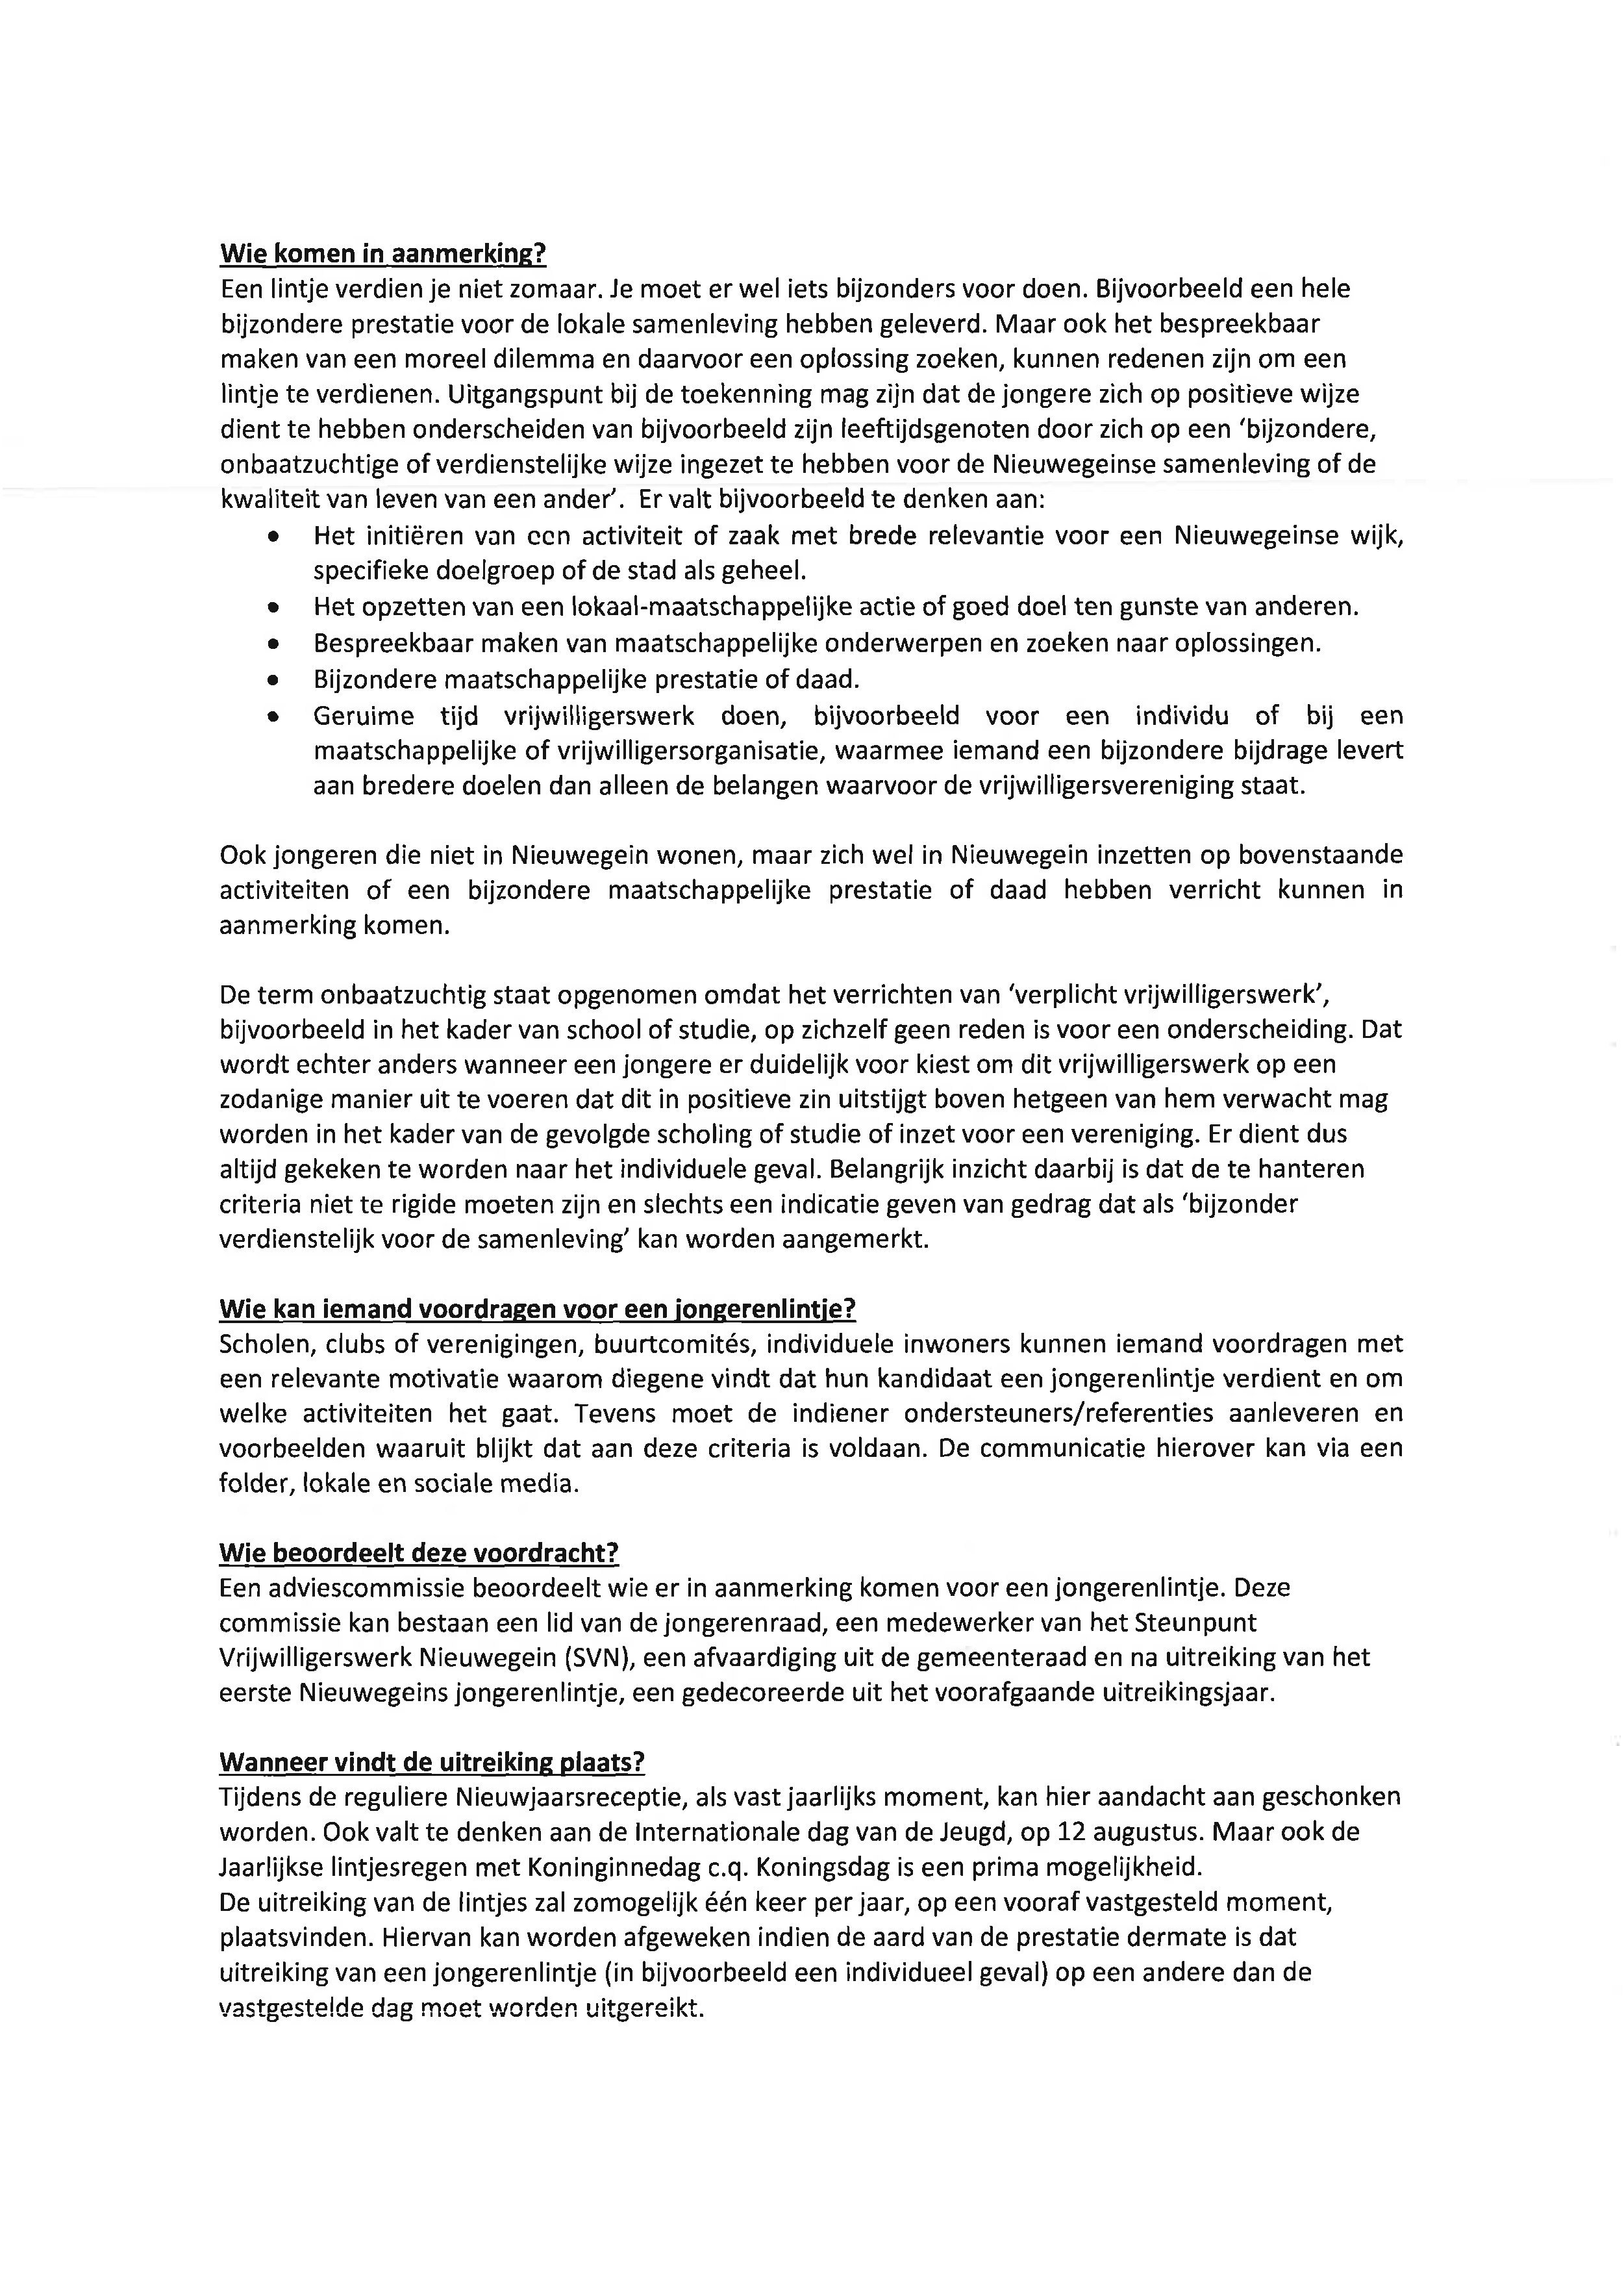 RAADSBELUIT De raad van de gemeente Nieuwegein; gelezen het initiatiefvoorstel van de fractie van het CDA Besluit 1.